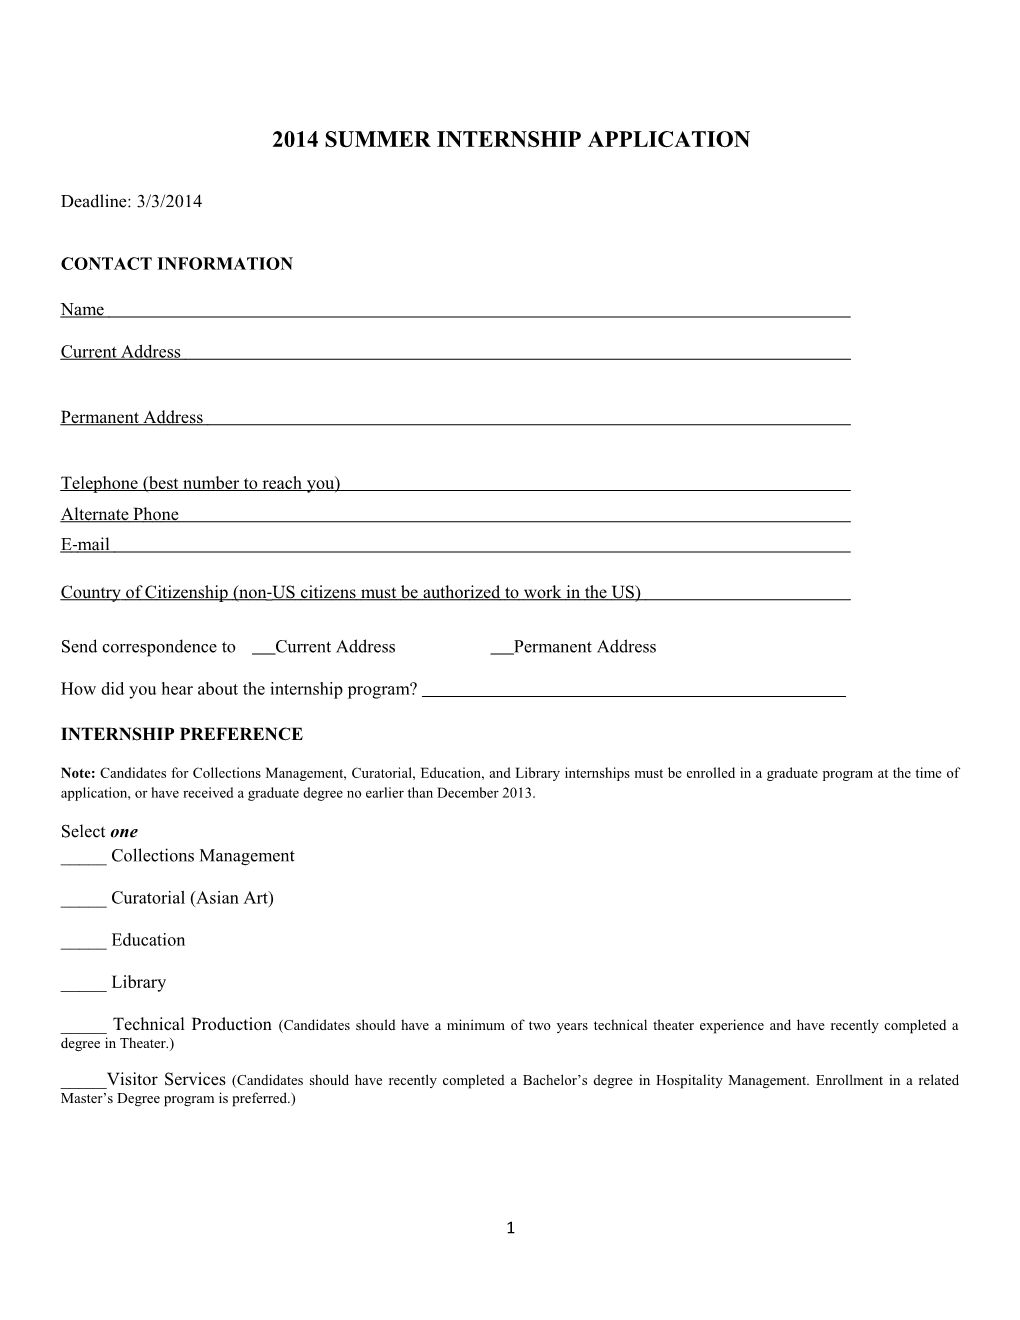 2014 Summer Internship Application